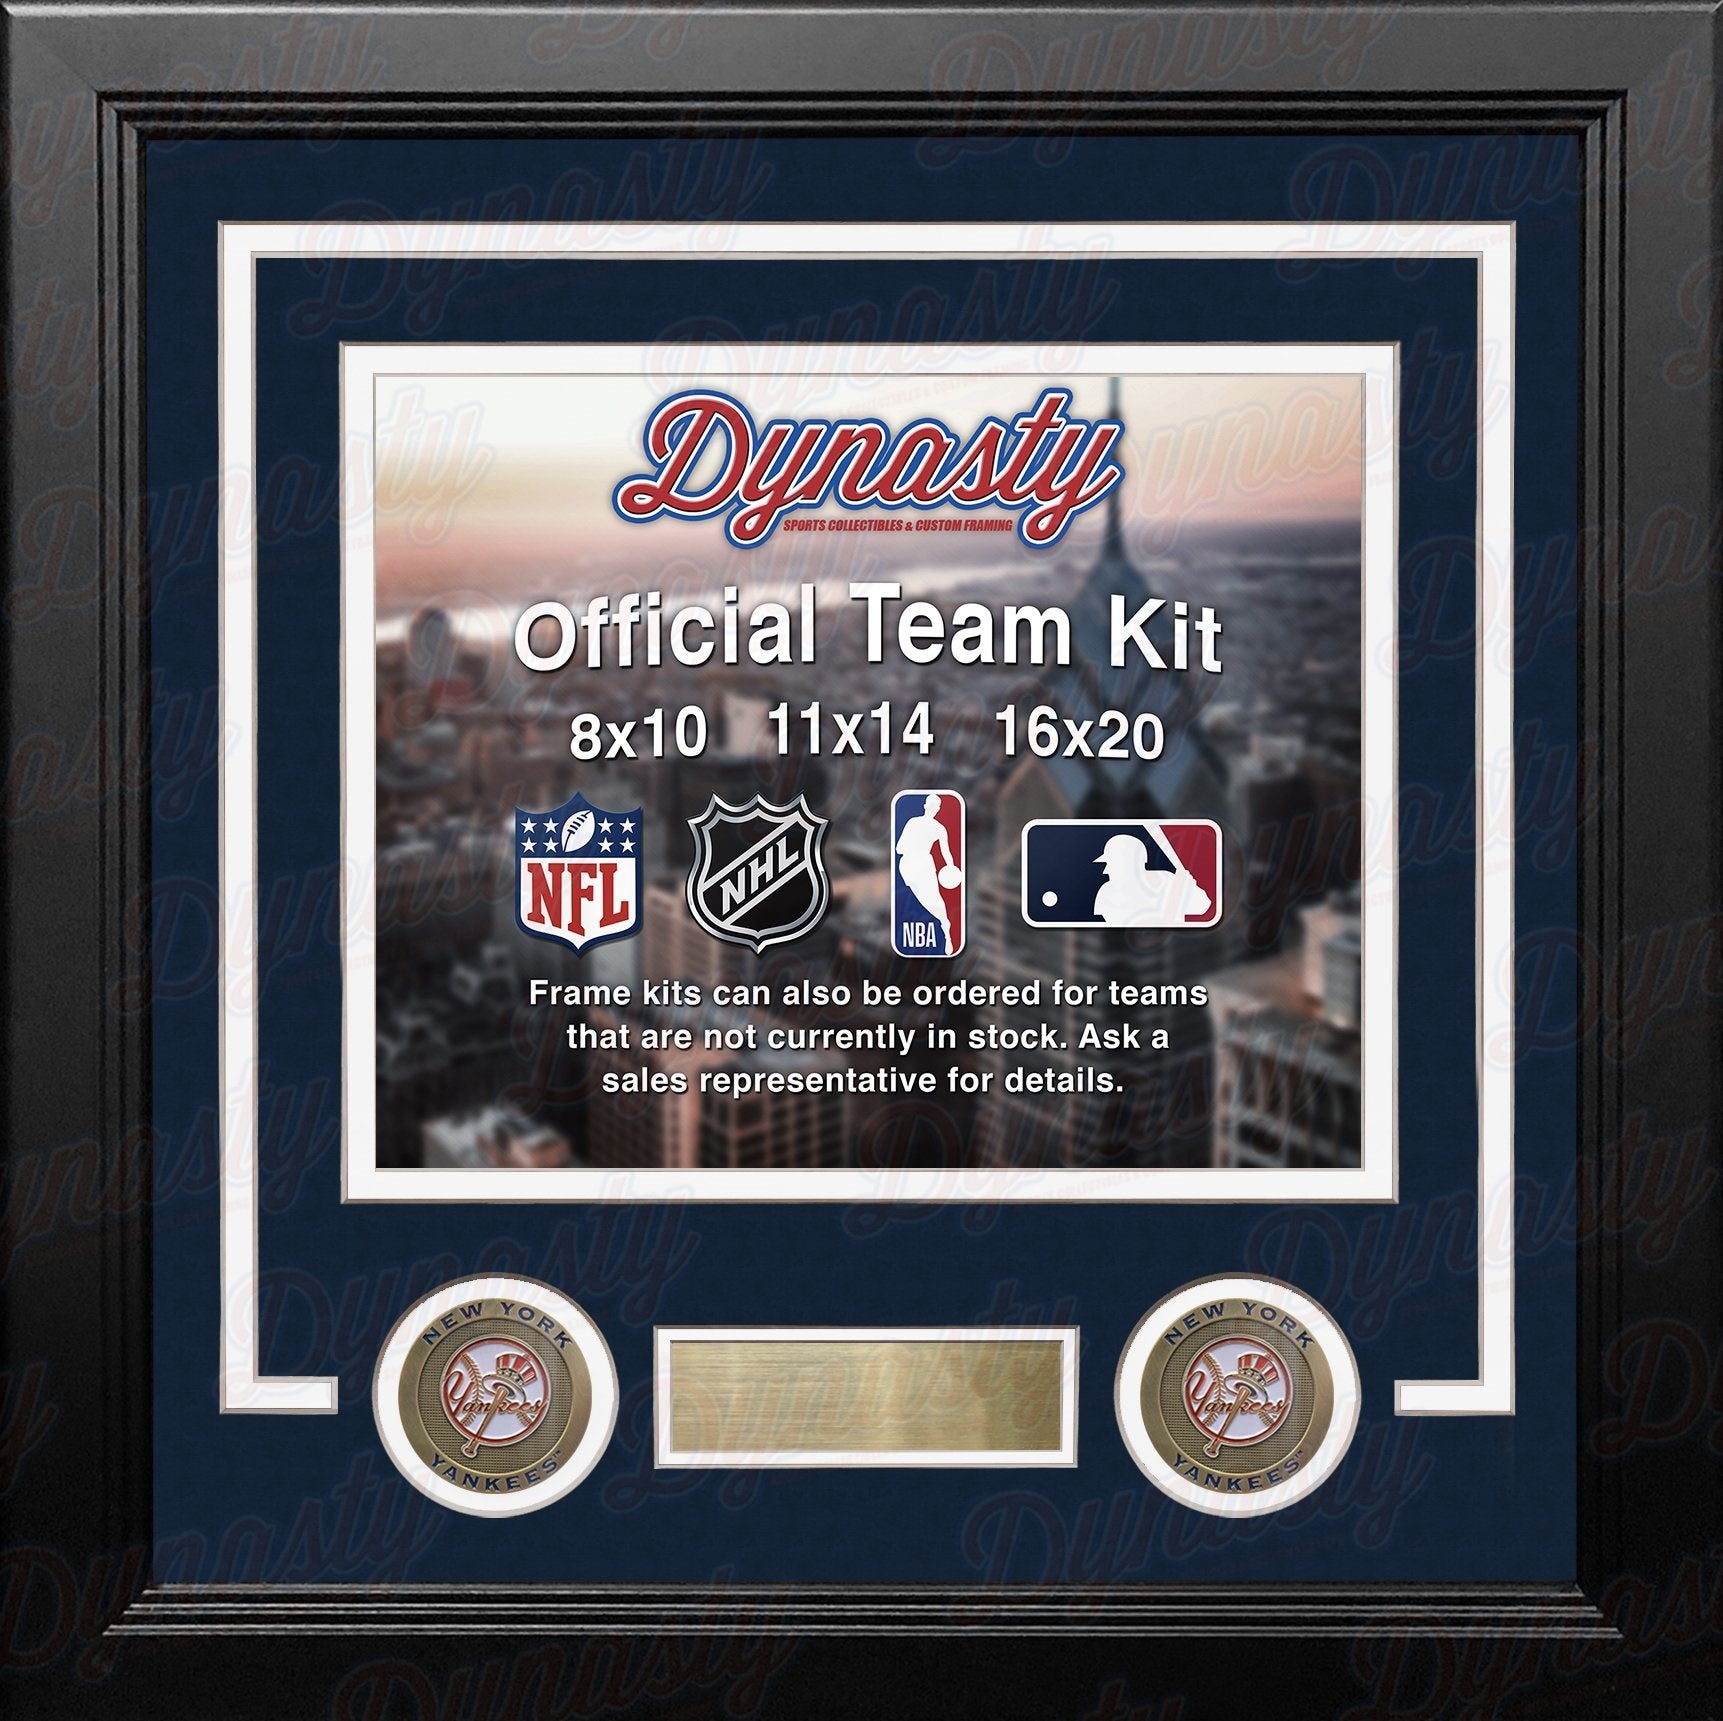 New York Yankees Custom MLB Baseball 11x14 Picture Frame Kit (Multiple Colors) - Dynasty Sports & Framing 